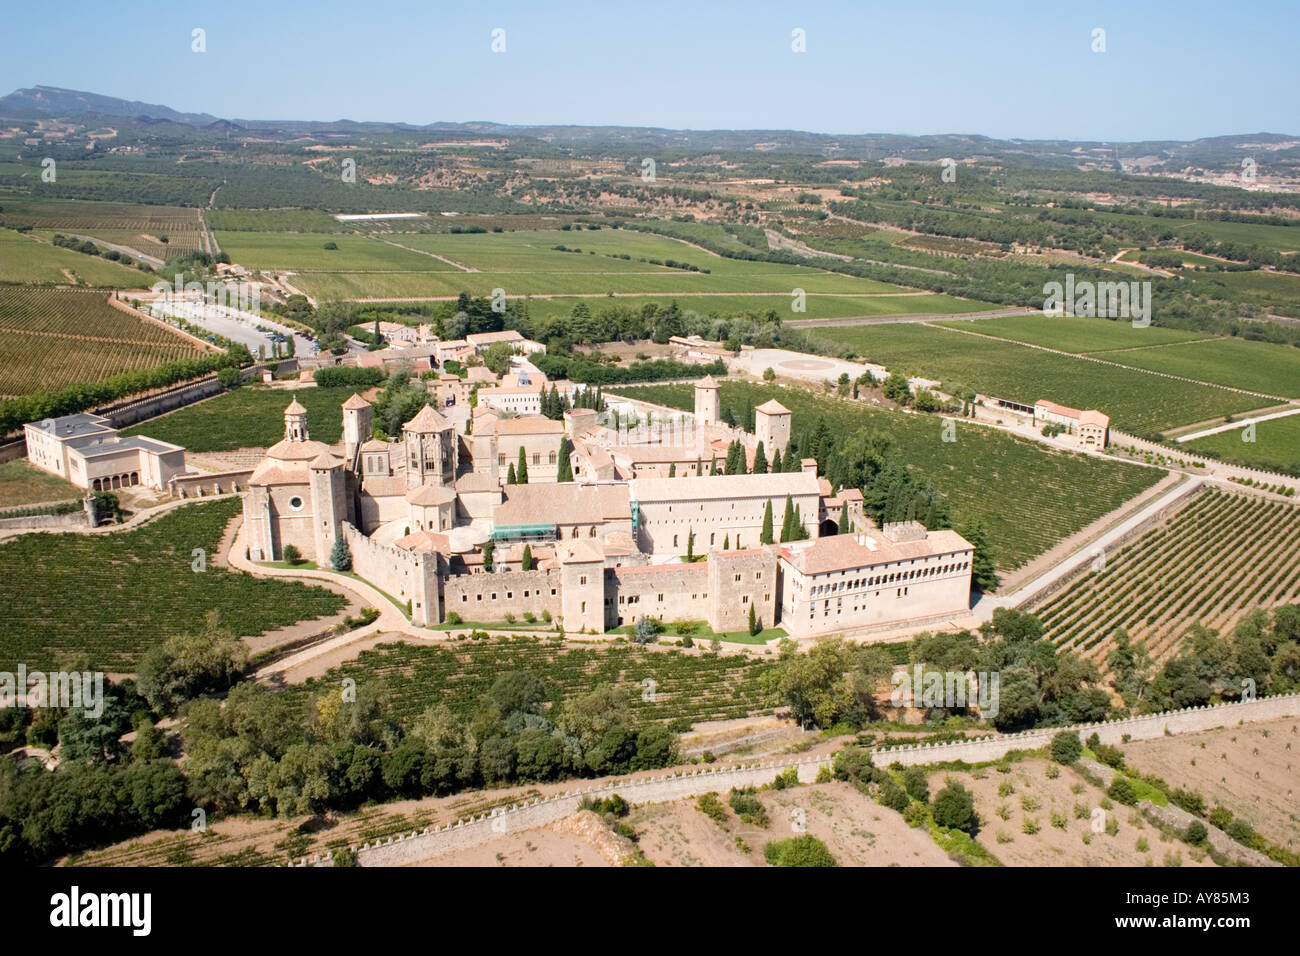 Luftaufnahme des Klosters Santa Maria de Poblet und umliegenden Felder in Poblet, Vimbodí, Tarragona, Katalonien, Spanien. Stockfoto